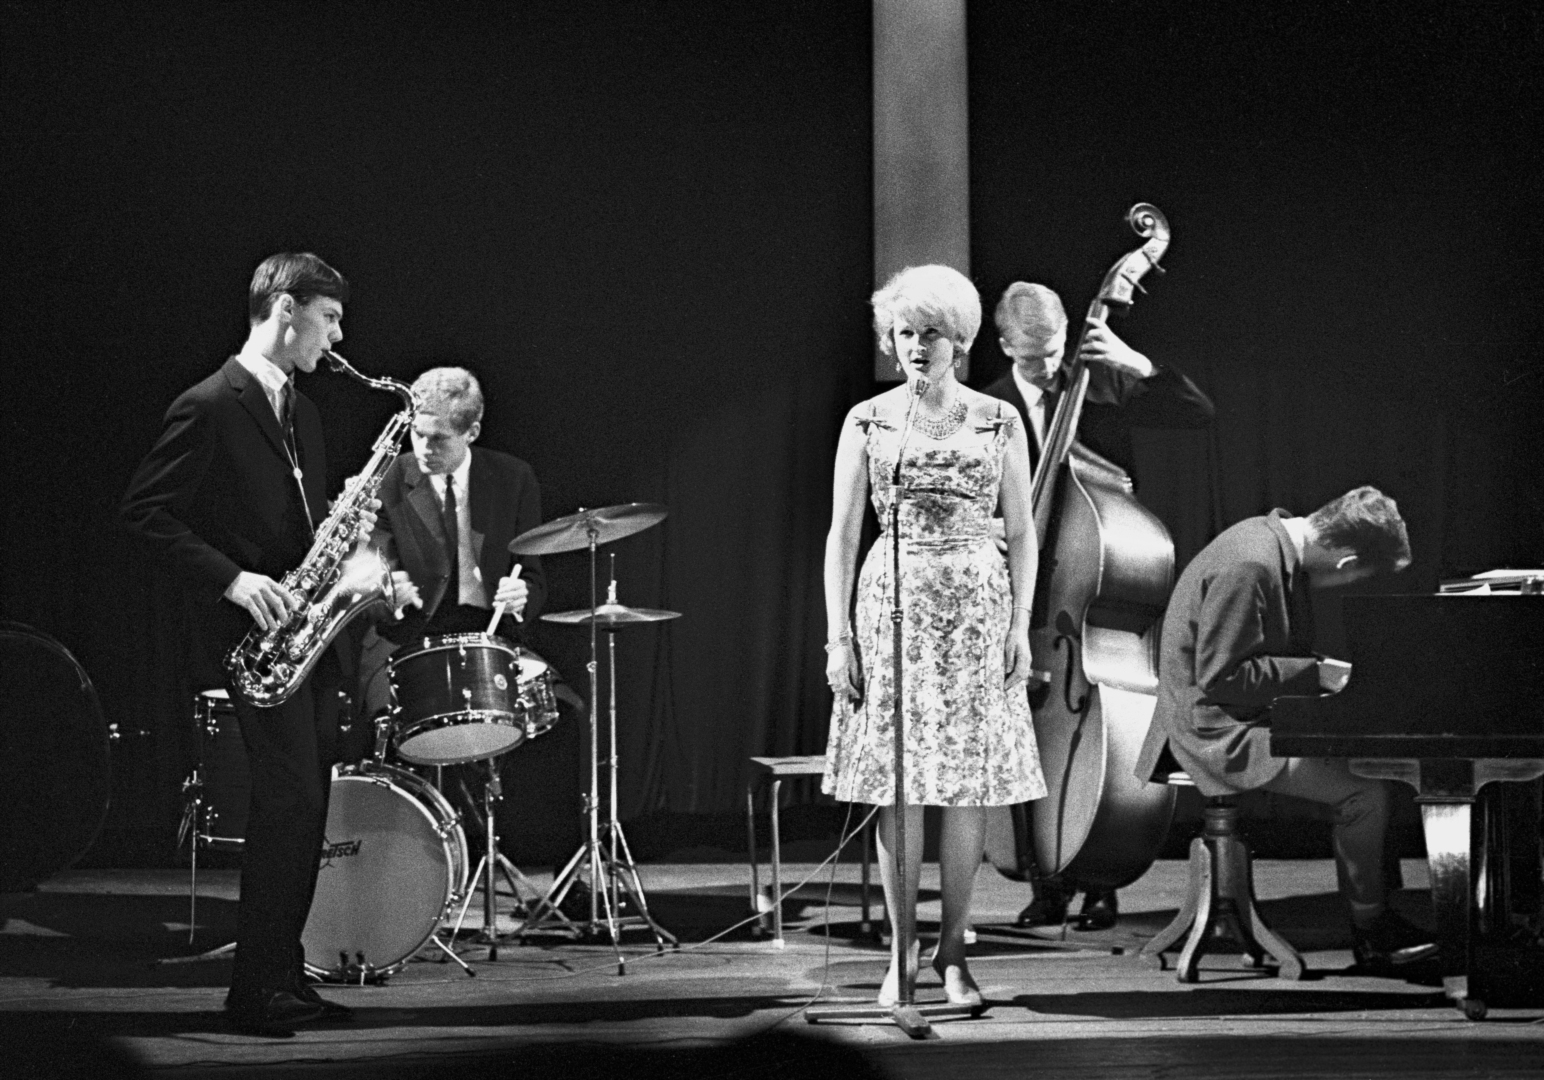 Garbarek og Karin: F. v. Jan Garbarek, Jon Christensen, Karin, Per Løberg og Terje Bjørklund i Kongsberg 1965. Samme år startet blant andre Karin og Garbarek Norsk Jazzforum.